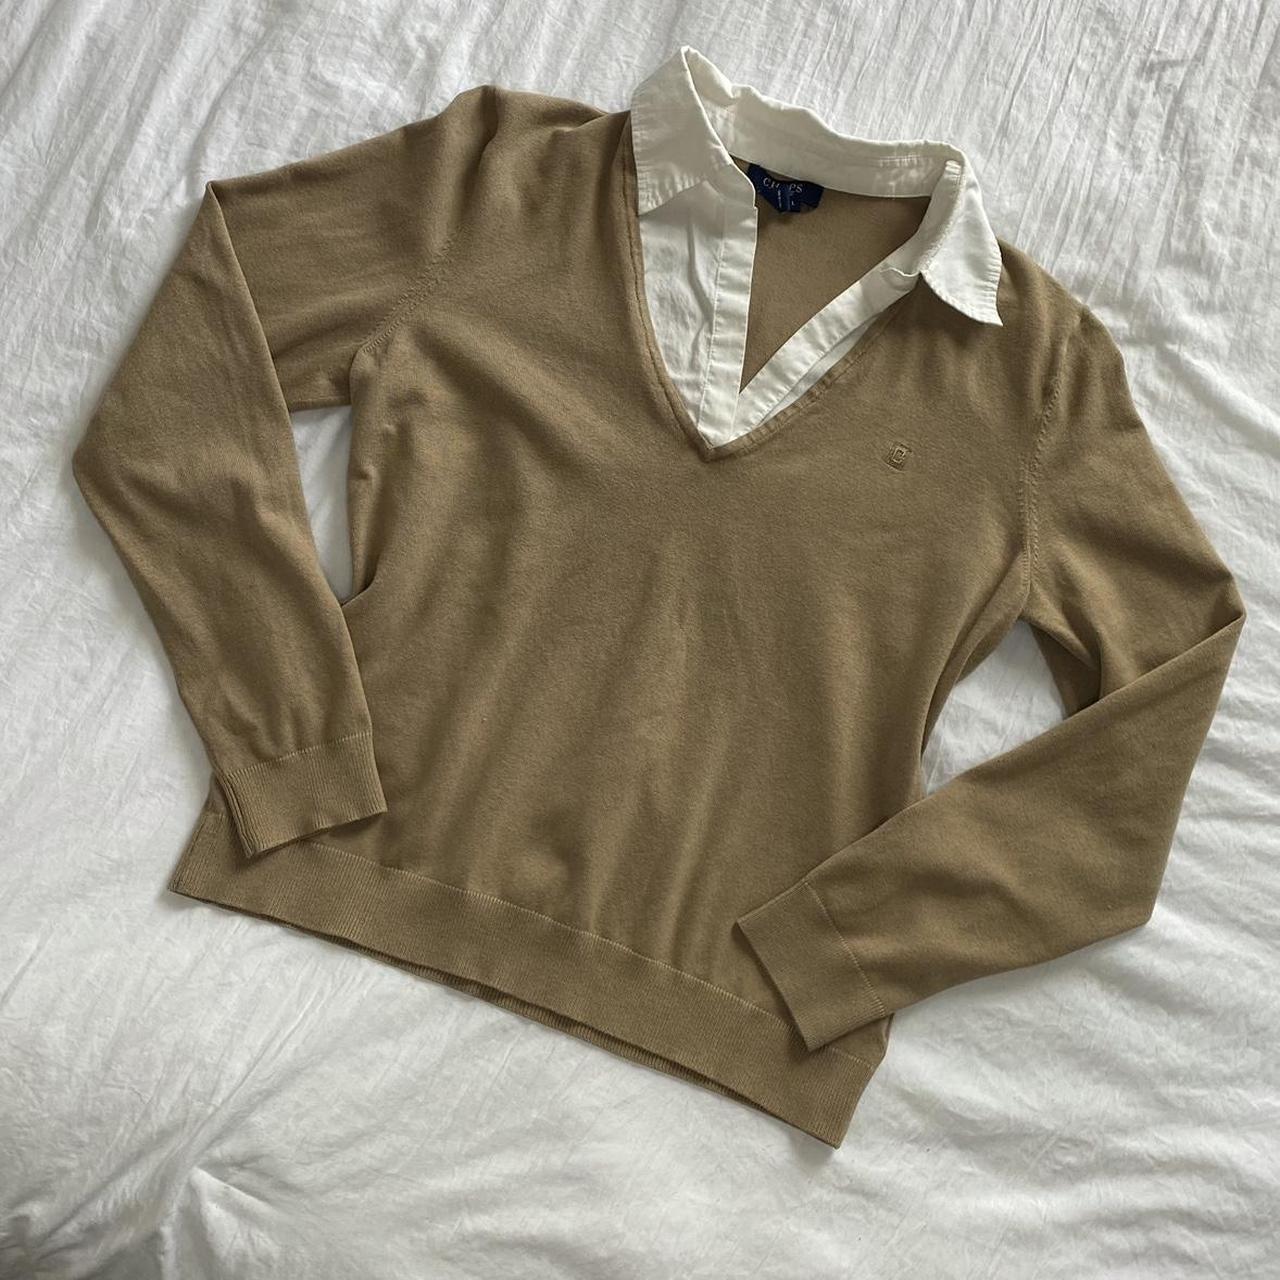 pretty tan sweater 🤎 size large Please... - Depop